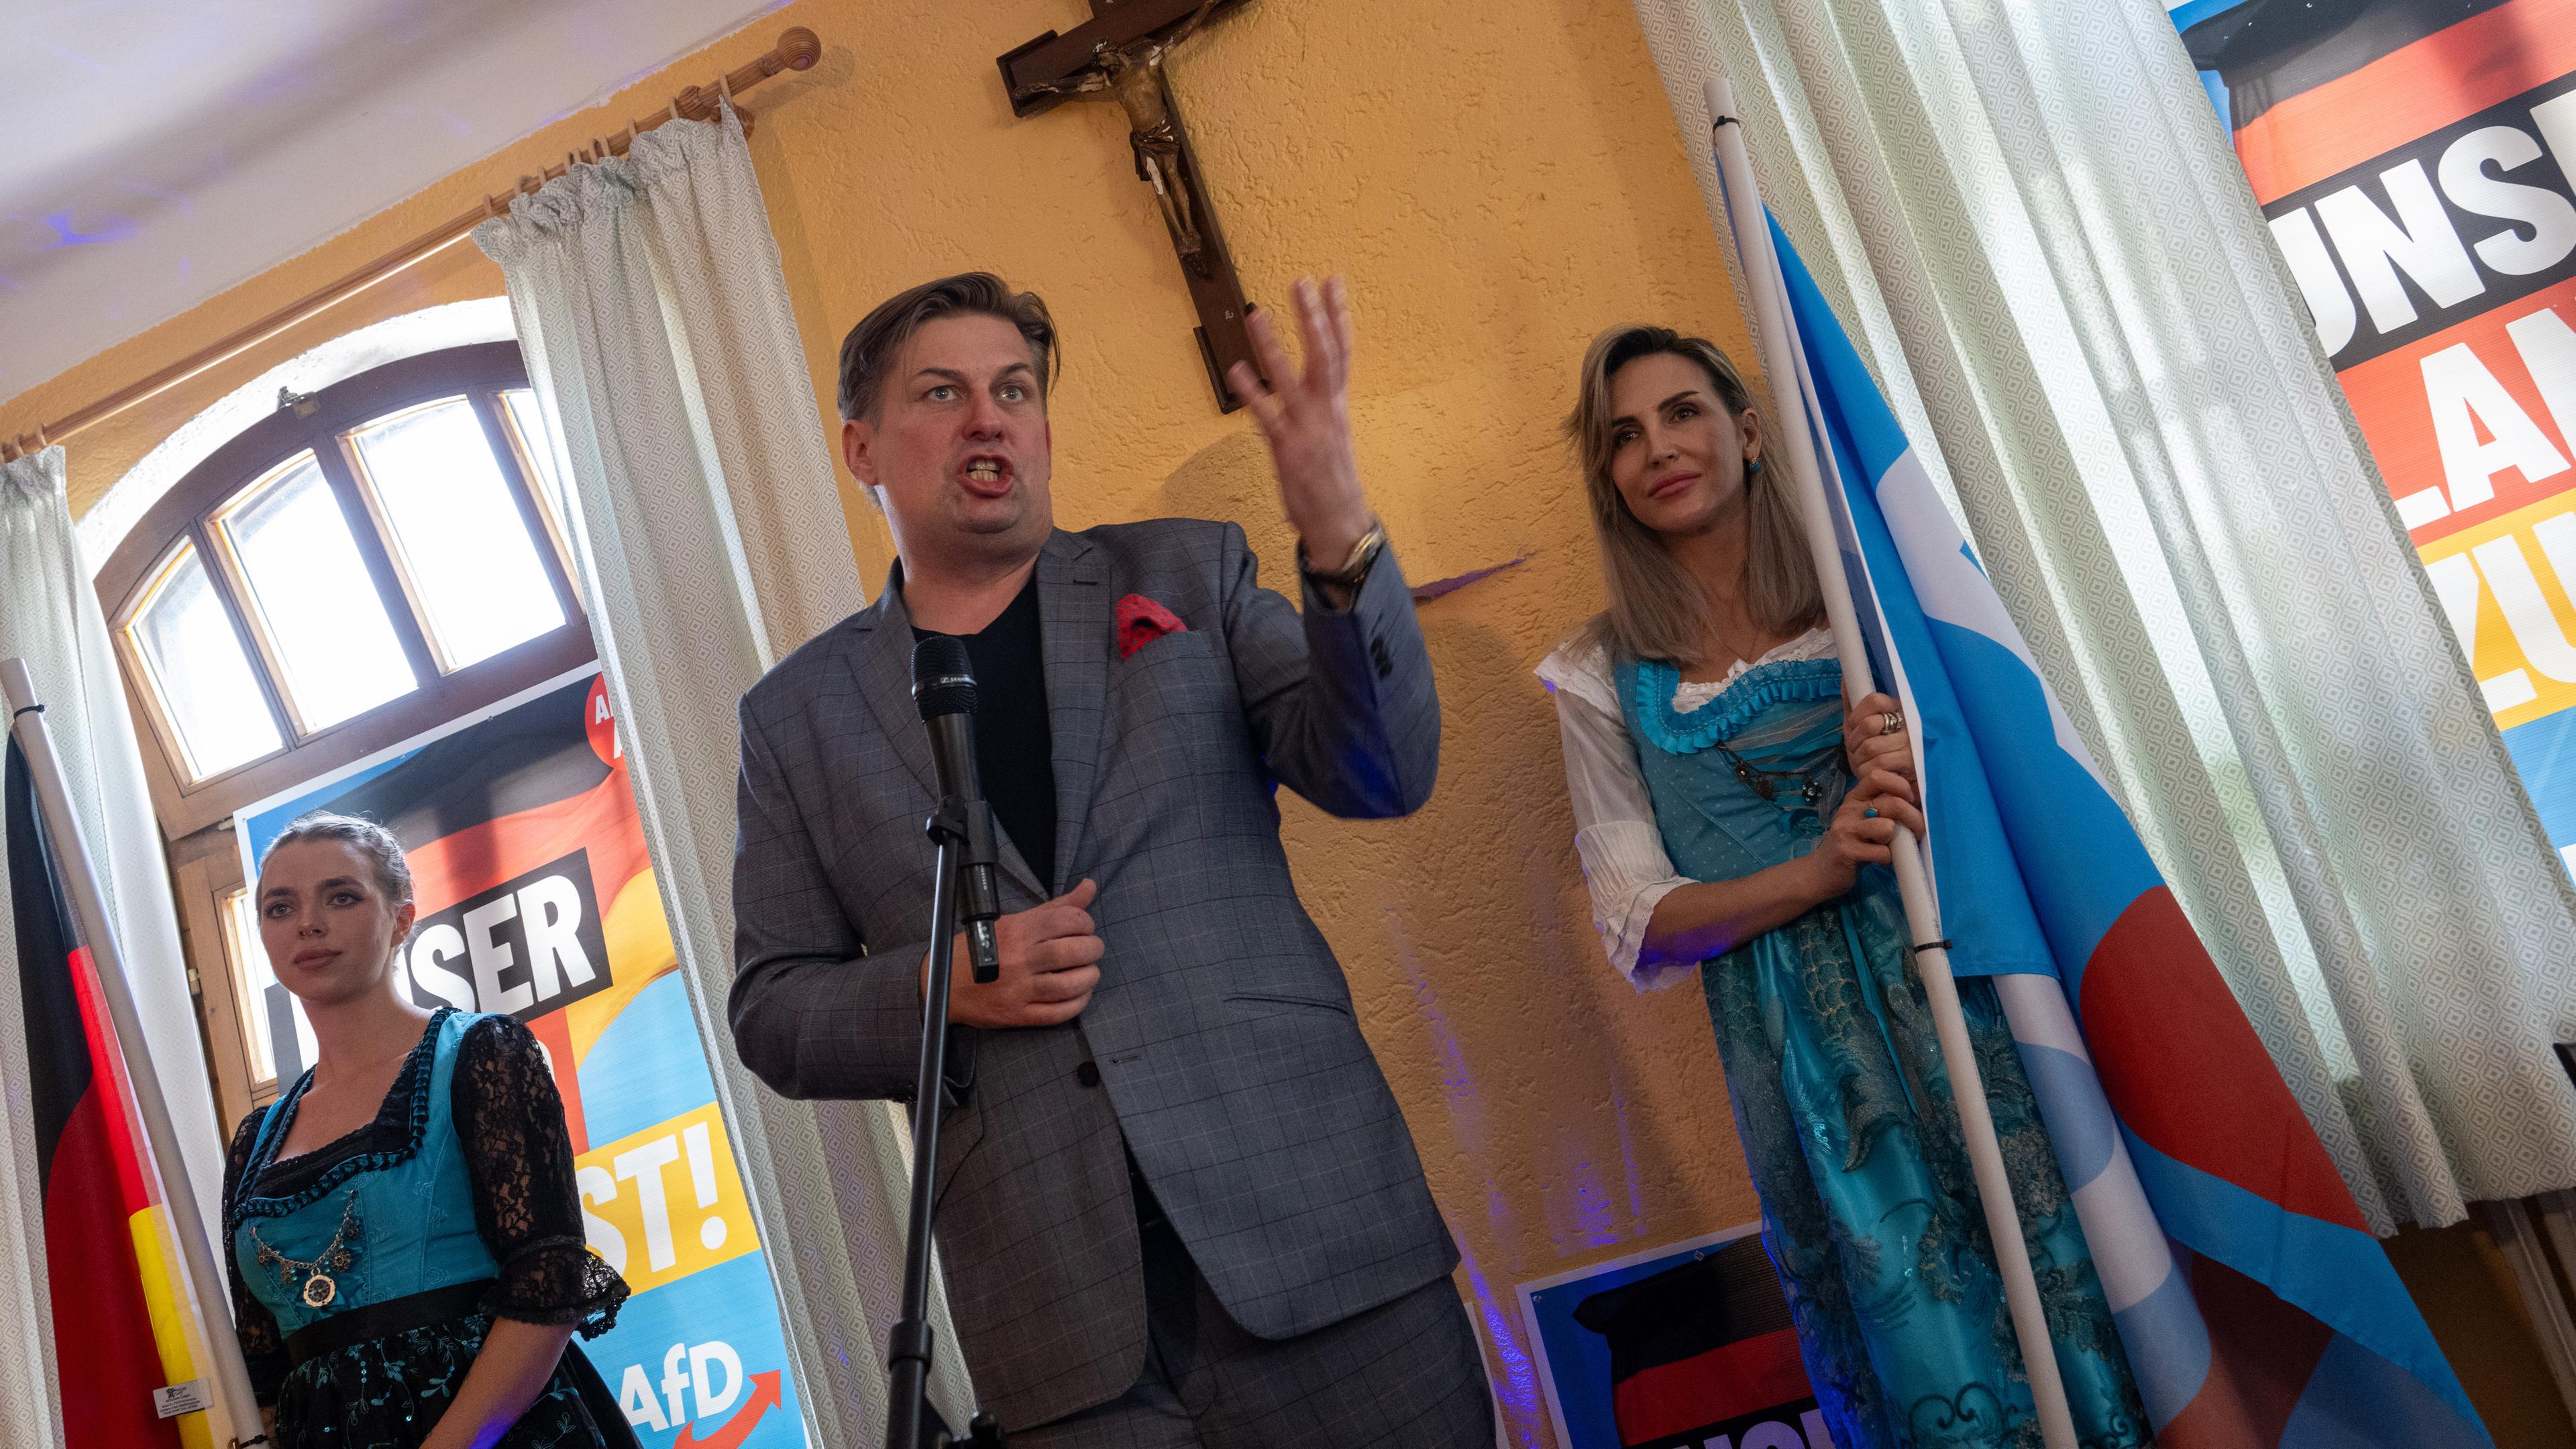 Maximilian Krah, Spitzenkandidat der AfD zur Europawahl, spricht bei einer Wahlveranstaltung in einem Gasthaus. Wegen Protesten wurde die Veranstaltung nach Holzkirchen verlegt.